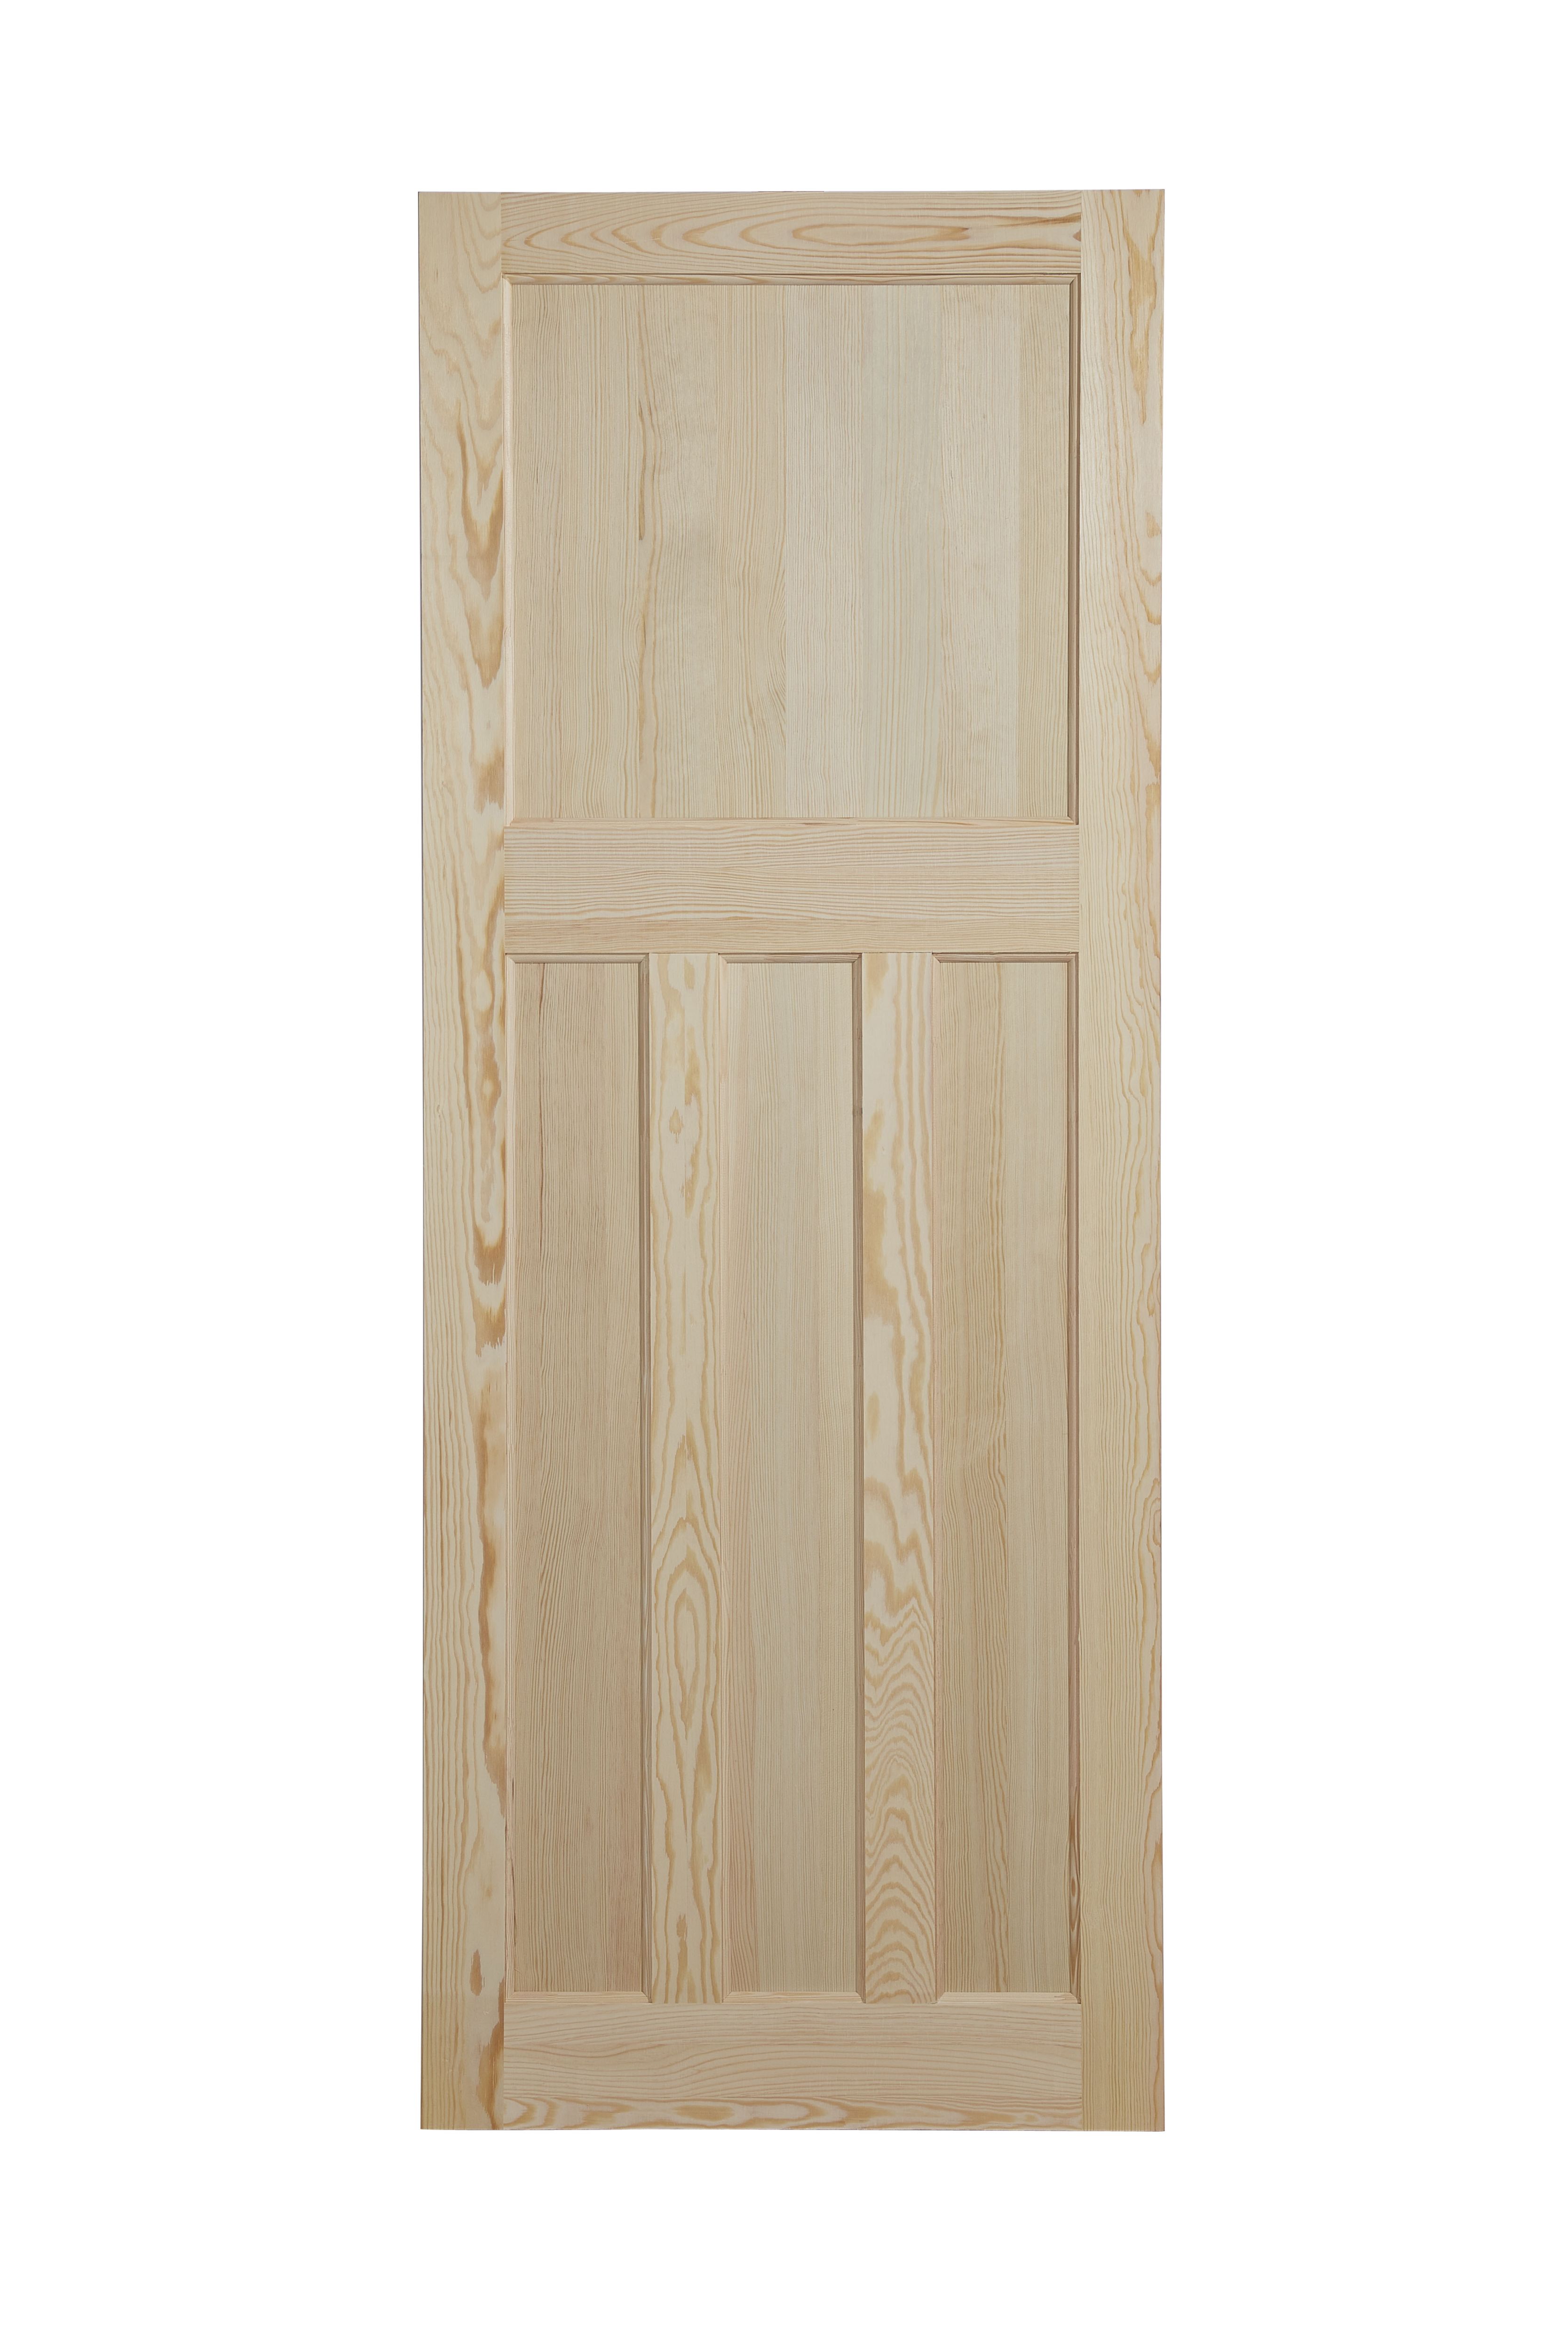 Geom 4 panel Unglazed Victorian Pine veneer Internal Clear pine Door, (H)1981mm (W)686mm (T)35mm